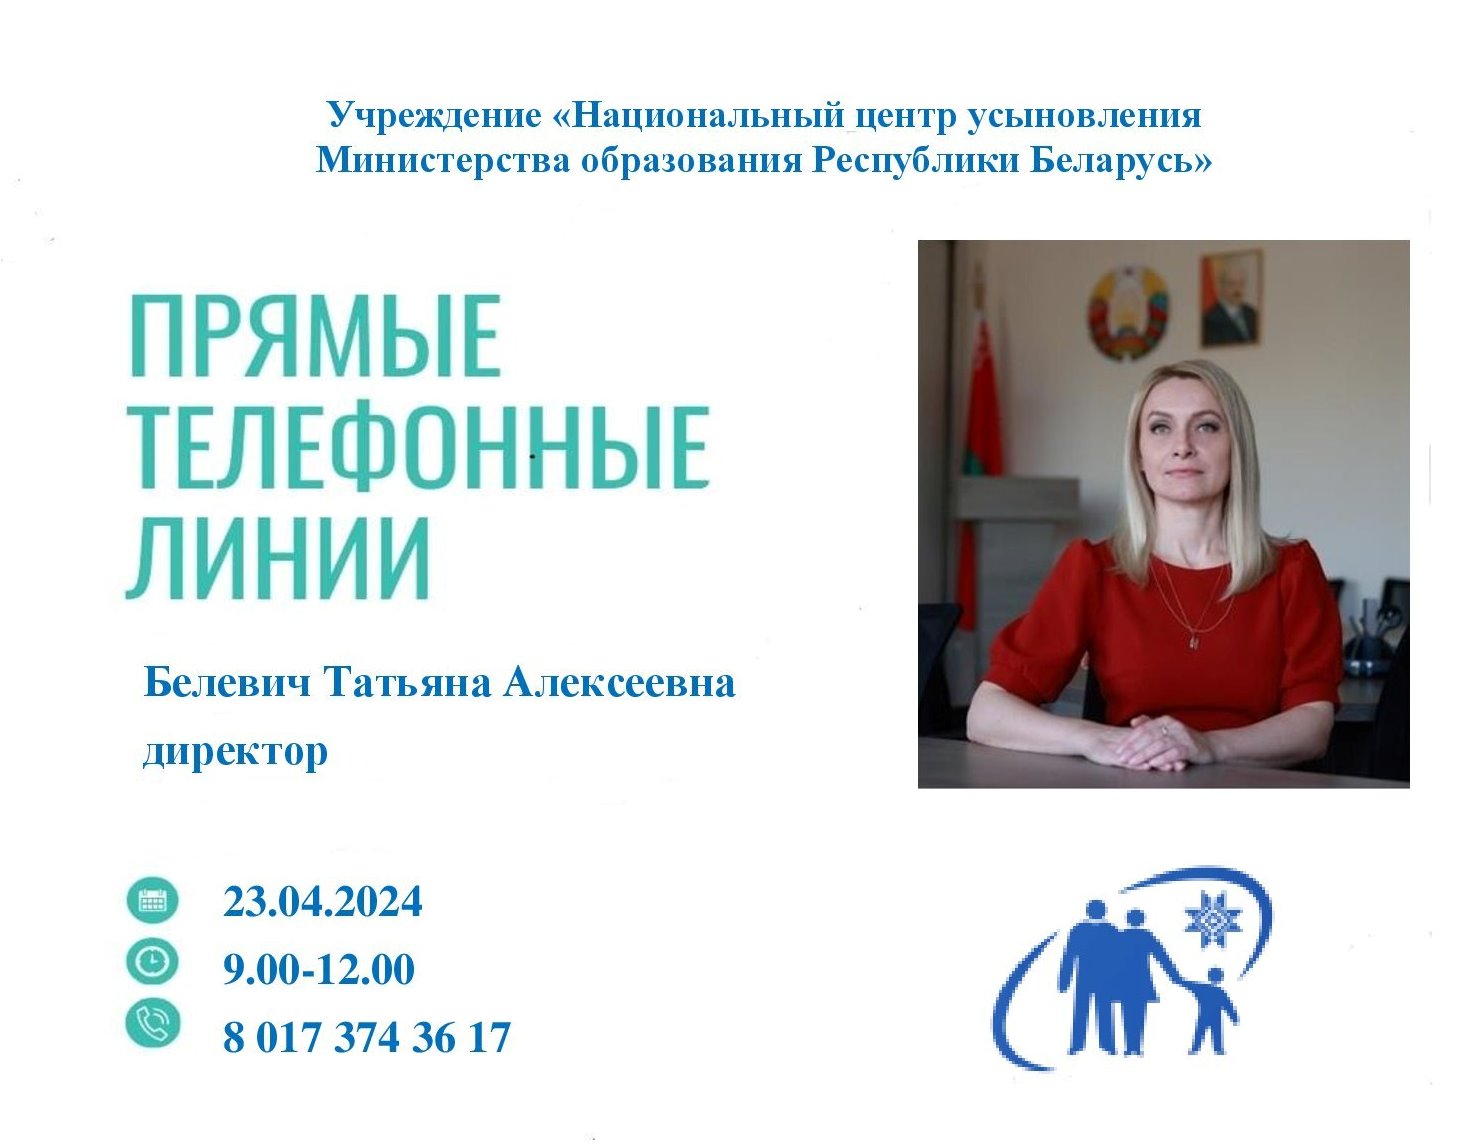 23 апреля «прямую телефонную линию» проведет директор Национального центра усыновления Татьяна  Алексеевна Белевич